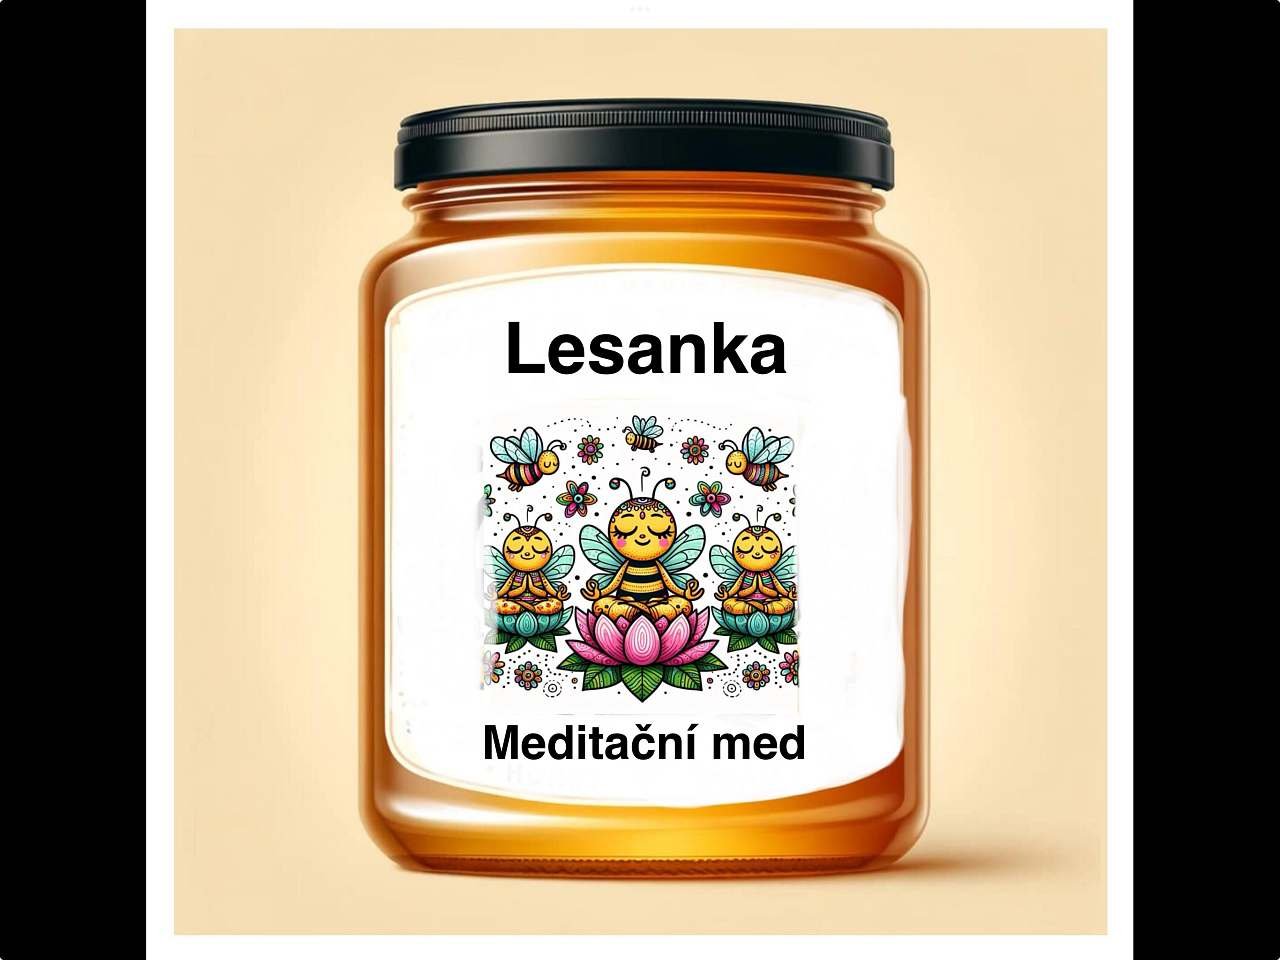 Lesanka